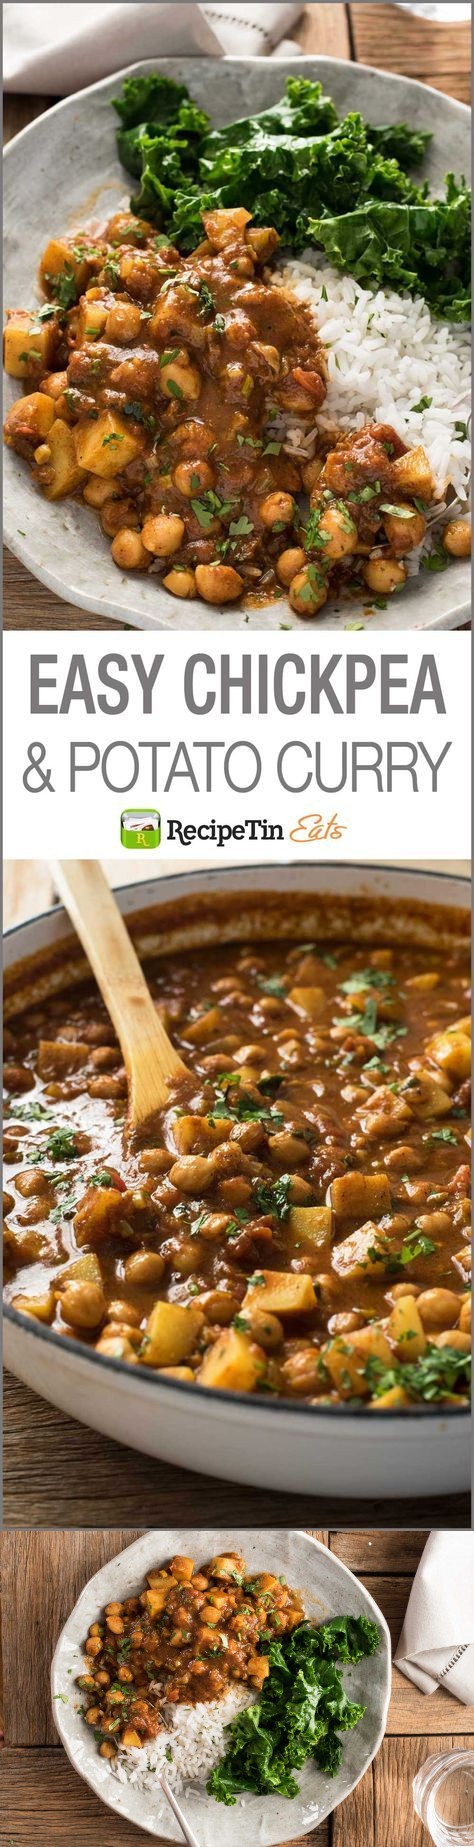 Easy Chickpea & Potato Curry (Chana Aloo Curry